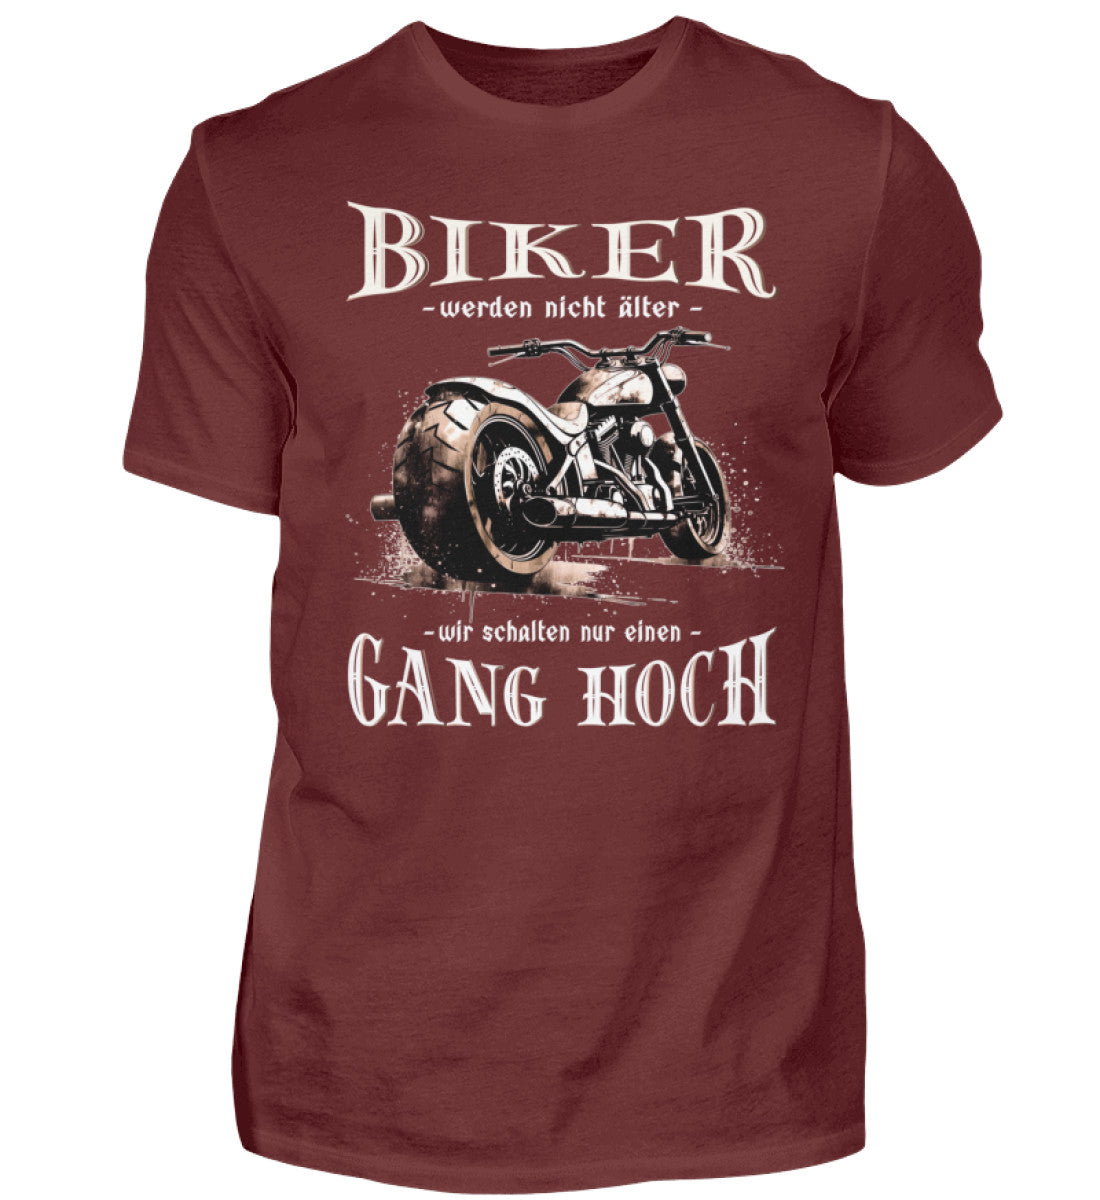 Ein Biker T-Shirt für Motorradfahrer von Wingbikers mit dem Aufdruck, Biker werden nicht älter - Wir schalten nur einen Gang hoch! - in weinrot.